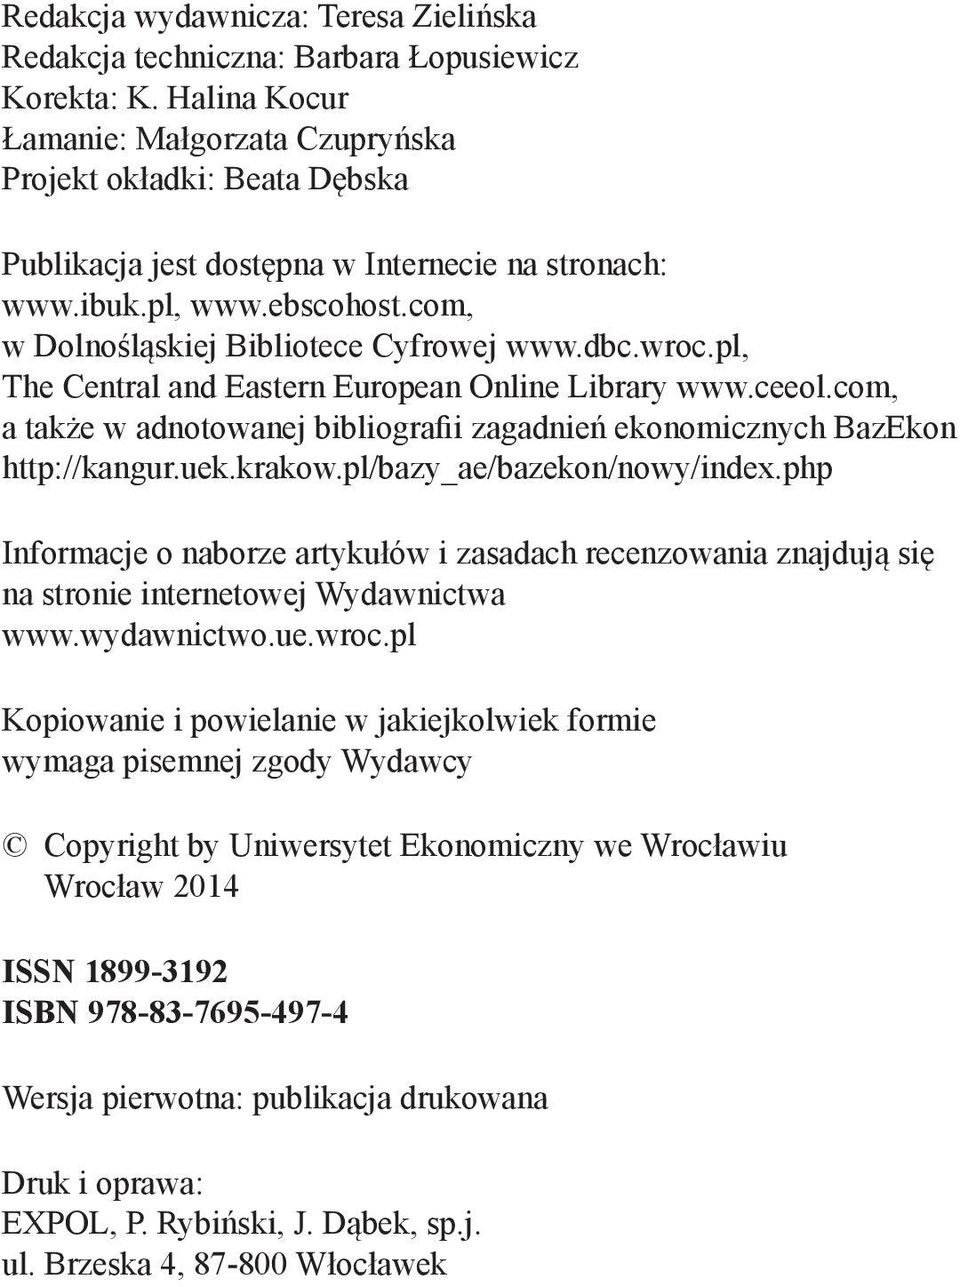 dbc.wroc.pl, The Central and Eastern European Online Library www.ceeol.com, a także w adnotowanej bibliografii zagadnień ekonomicznych BazEkon http://kangur.uek.krakow.pl/bazy_ae/bazekon/nowy/index.